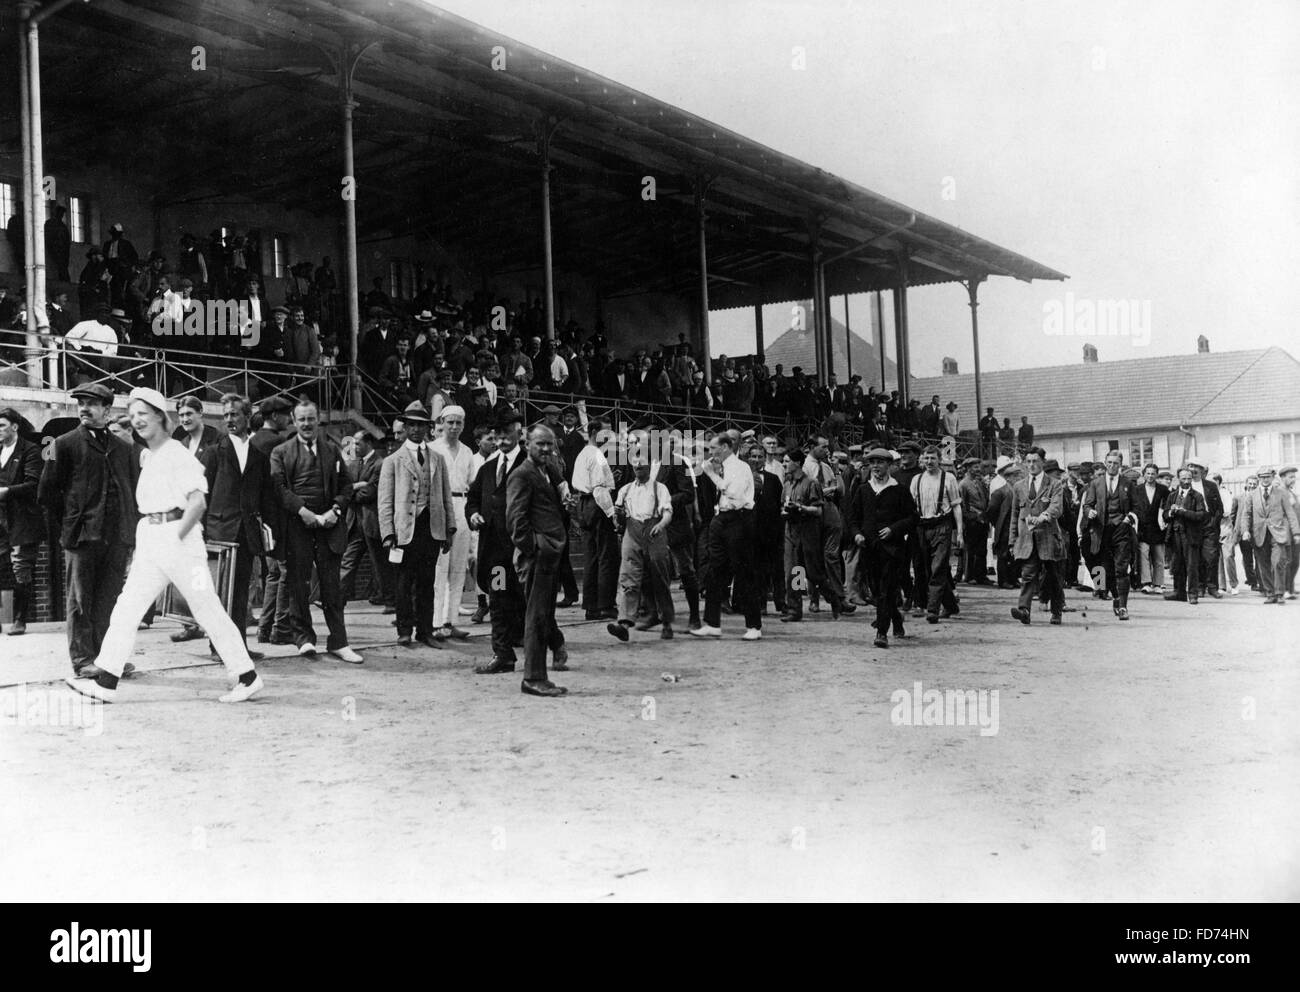 Les spectateurs à un match de baseball dans un camp d'internement, 1915 Banque D'Images